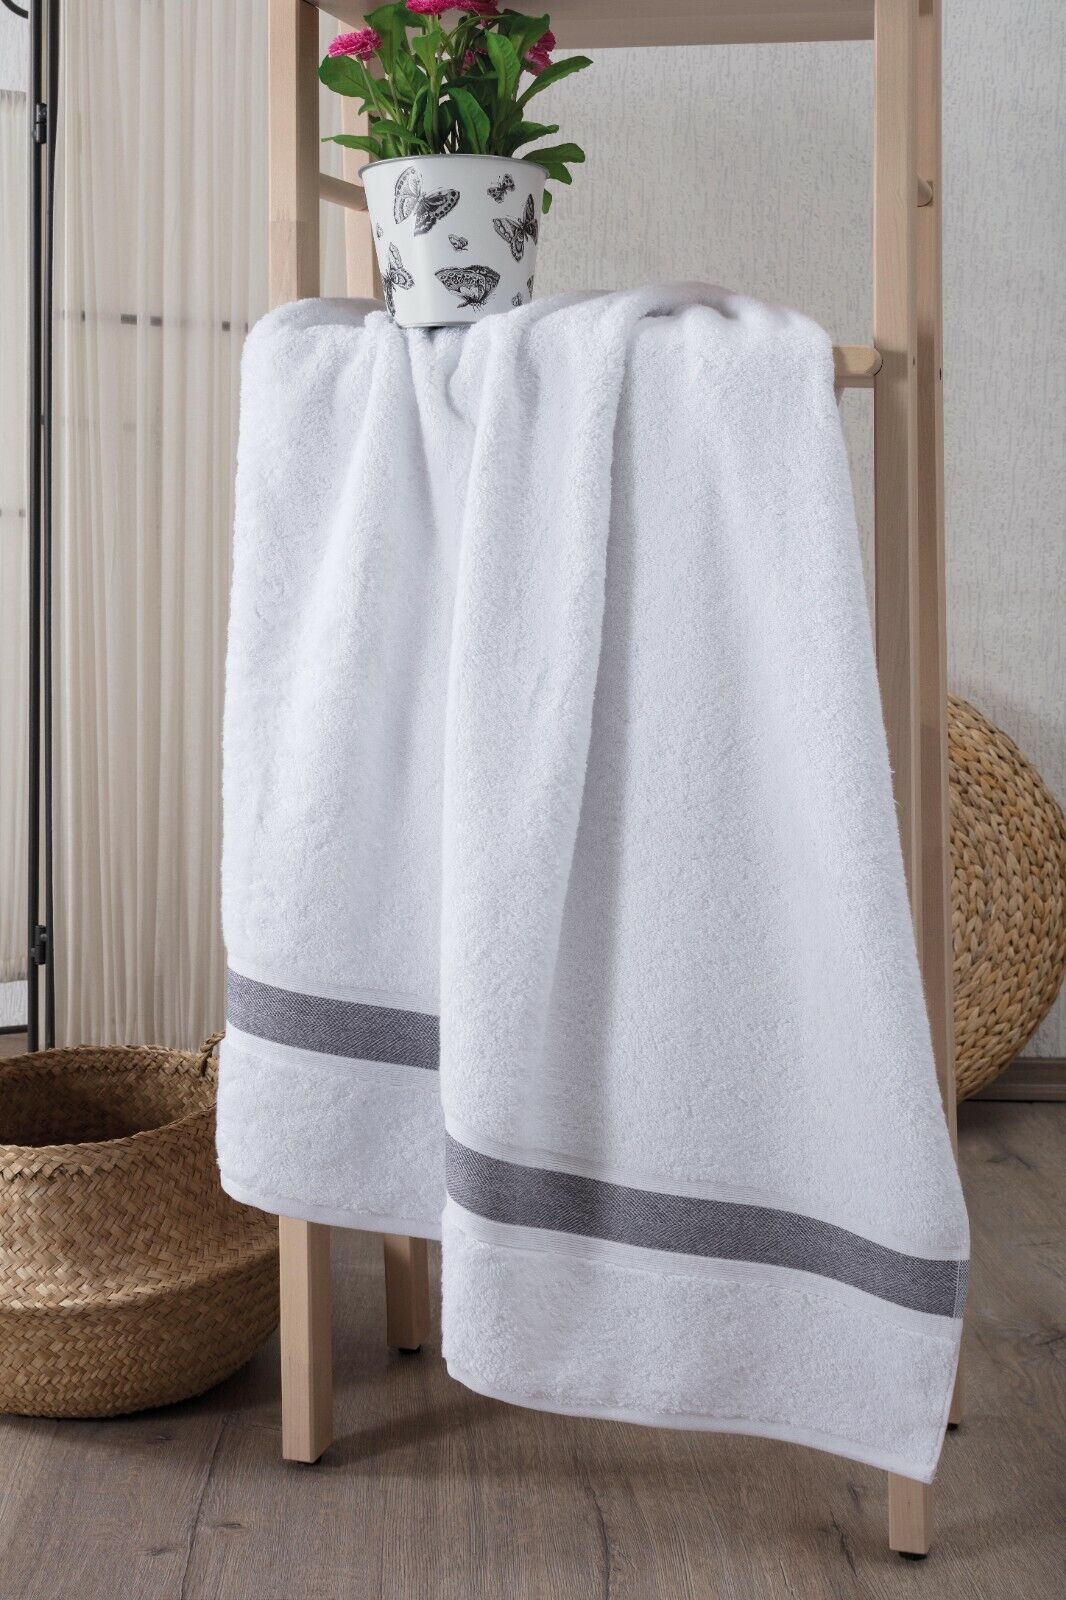 Large Bath Towels 100% Cotton Turkish Towels 35x67 Premium Quality Towel